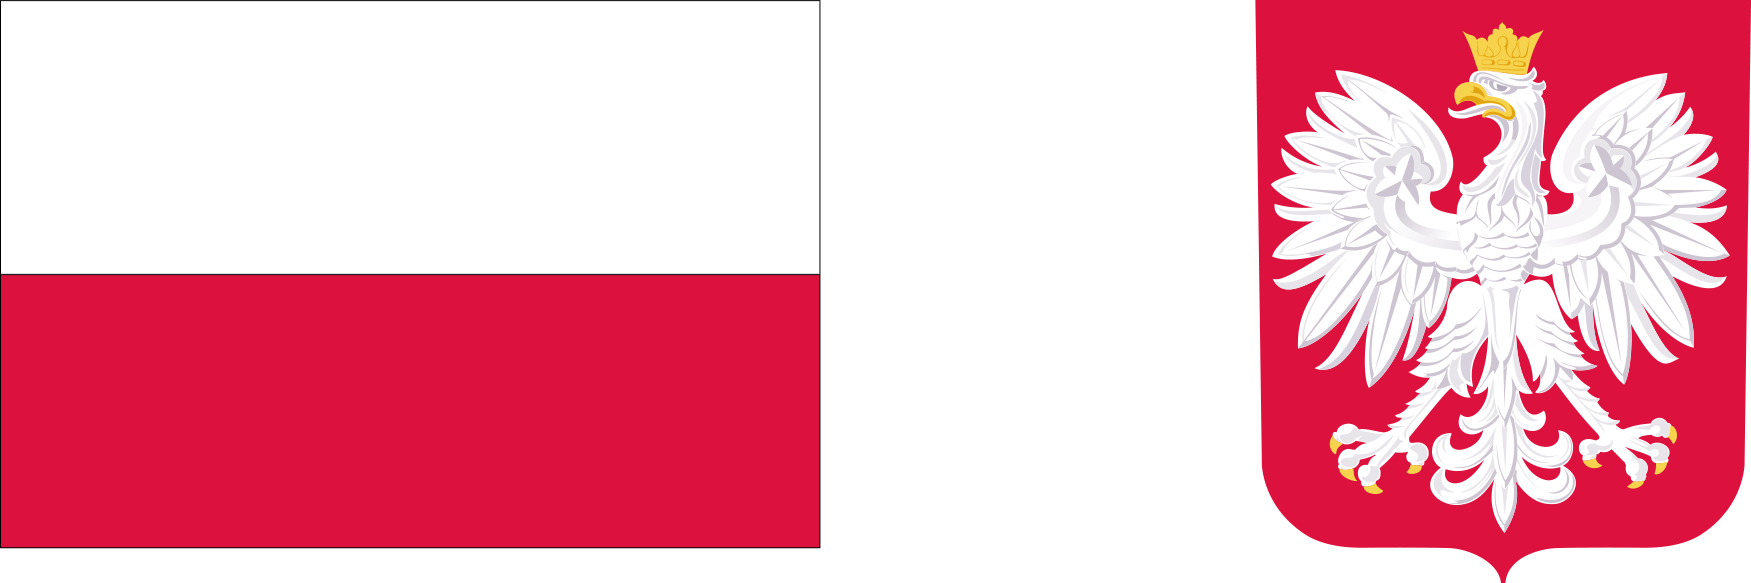 Po lewej stronie biało-czerwona flaga, po prawej godło RP - biały orzeł w koronie na czerwonym tle